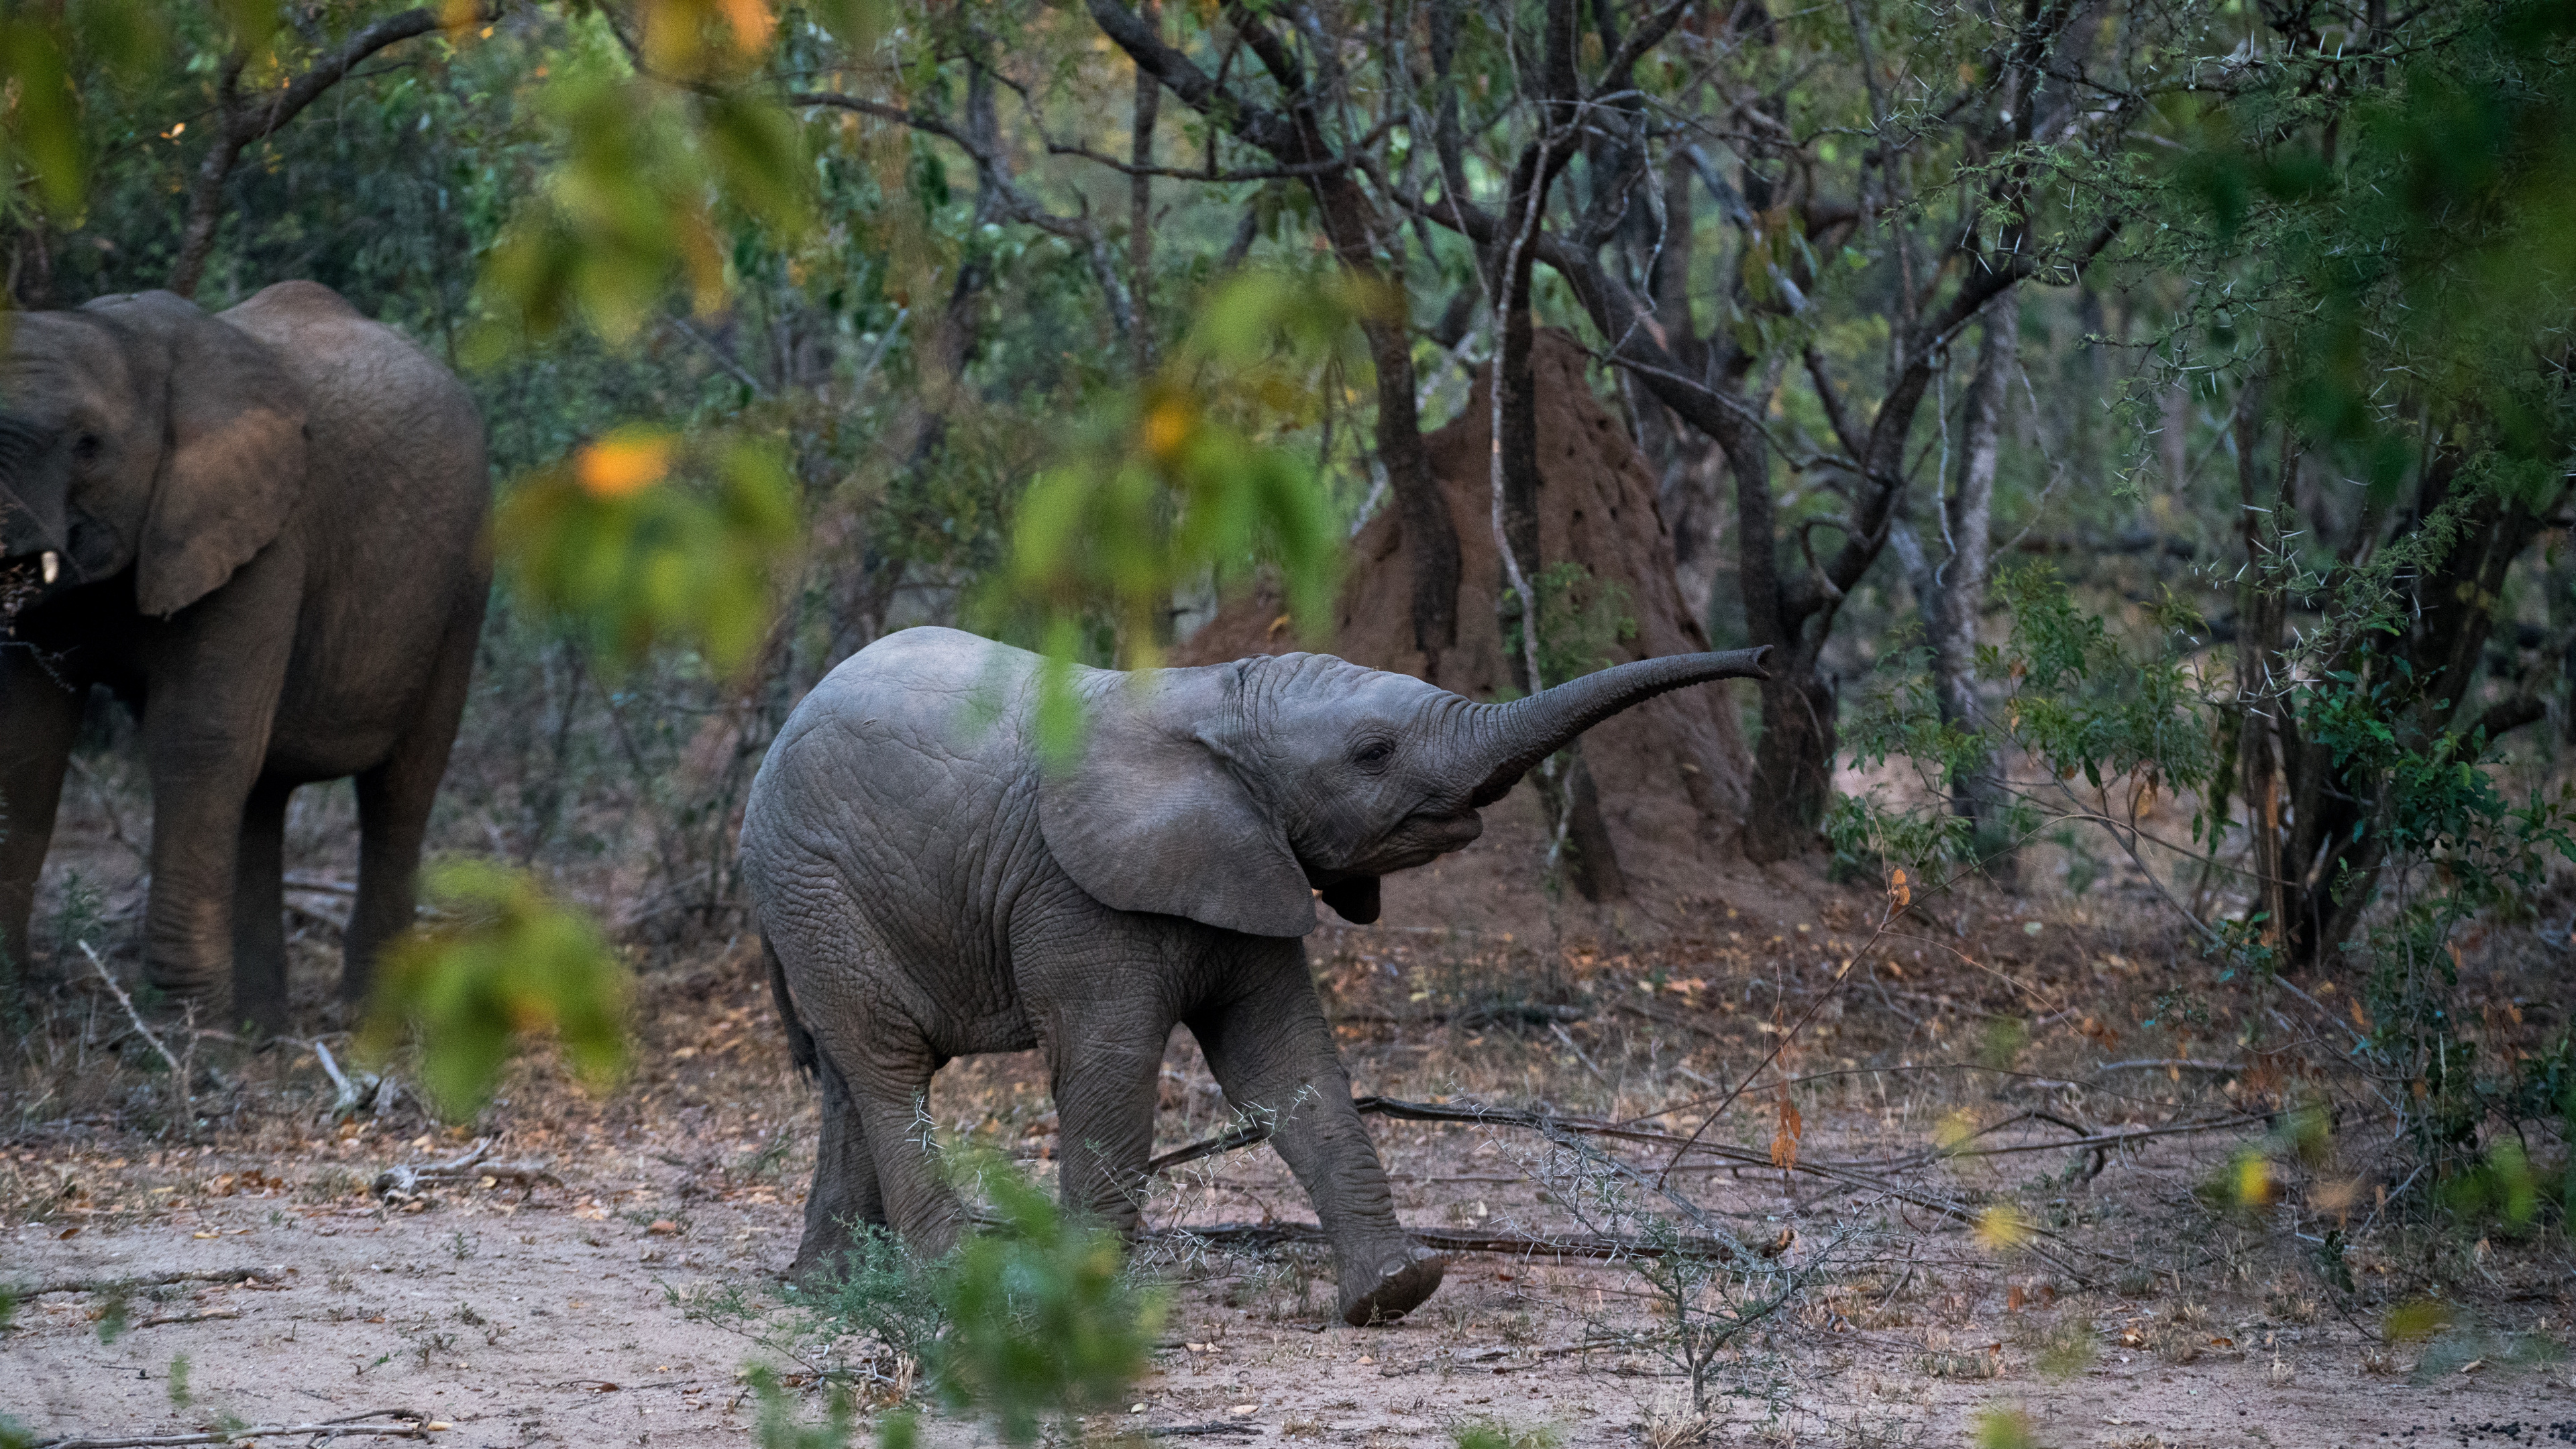 印度大象, 陆地动物, 野生动物, 大象和猛犸象, 非洲象 壁纸 3840x2160 允许